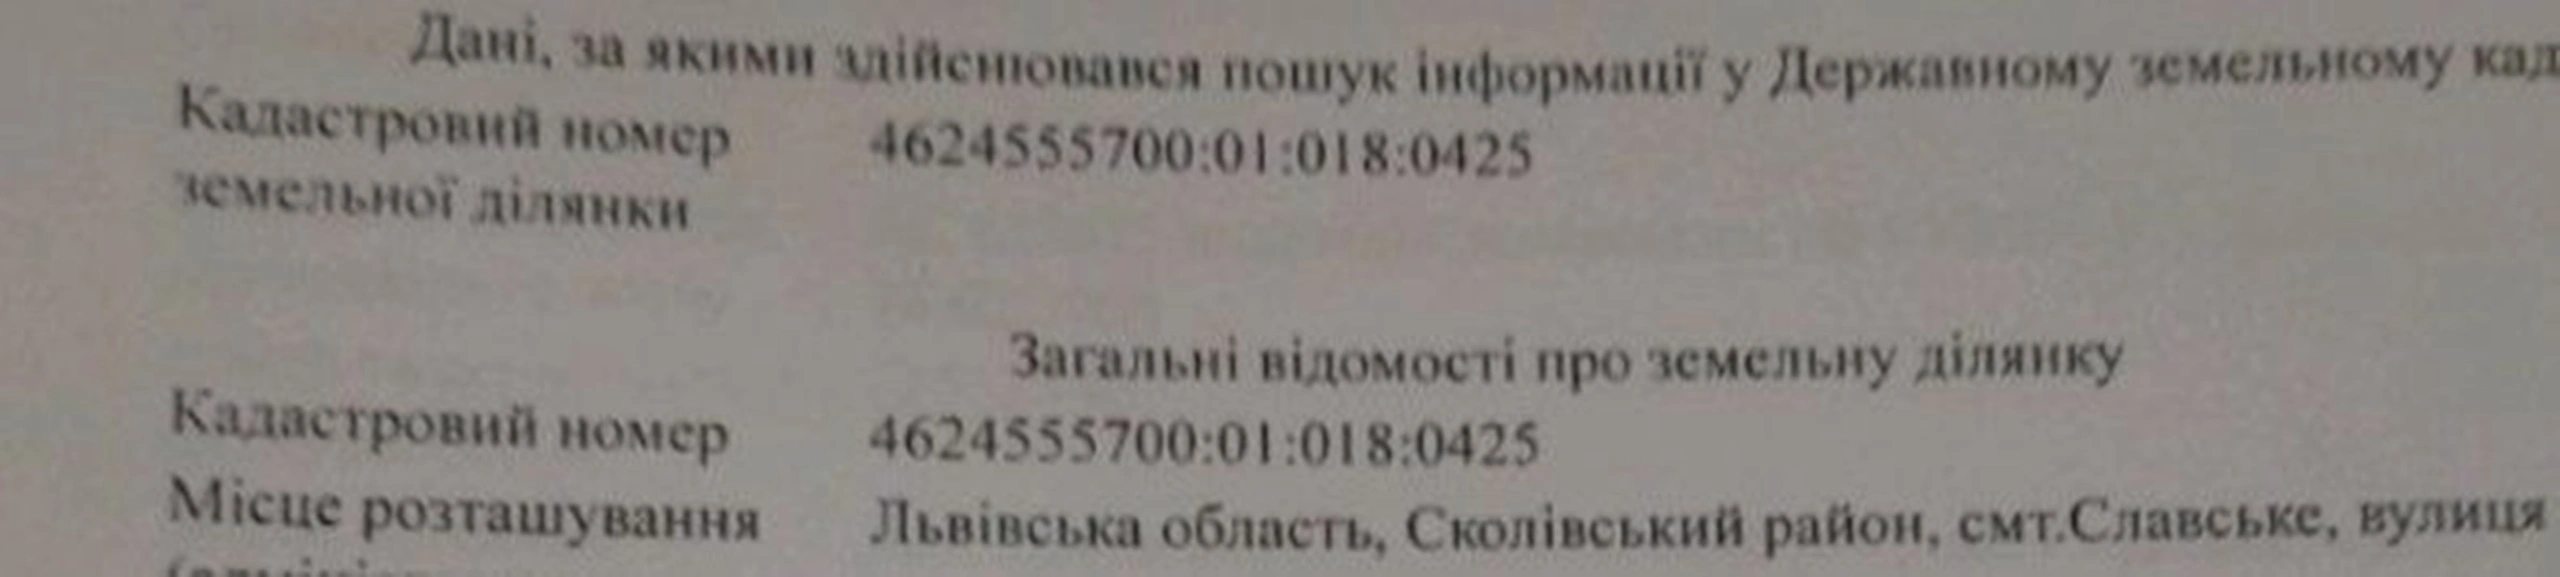 Продається земельна ділянка з документами у Славське від власника 40со